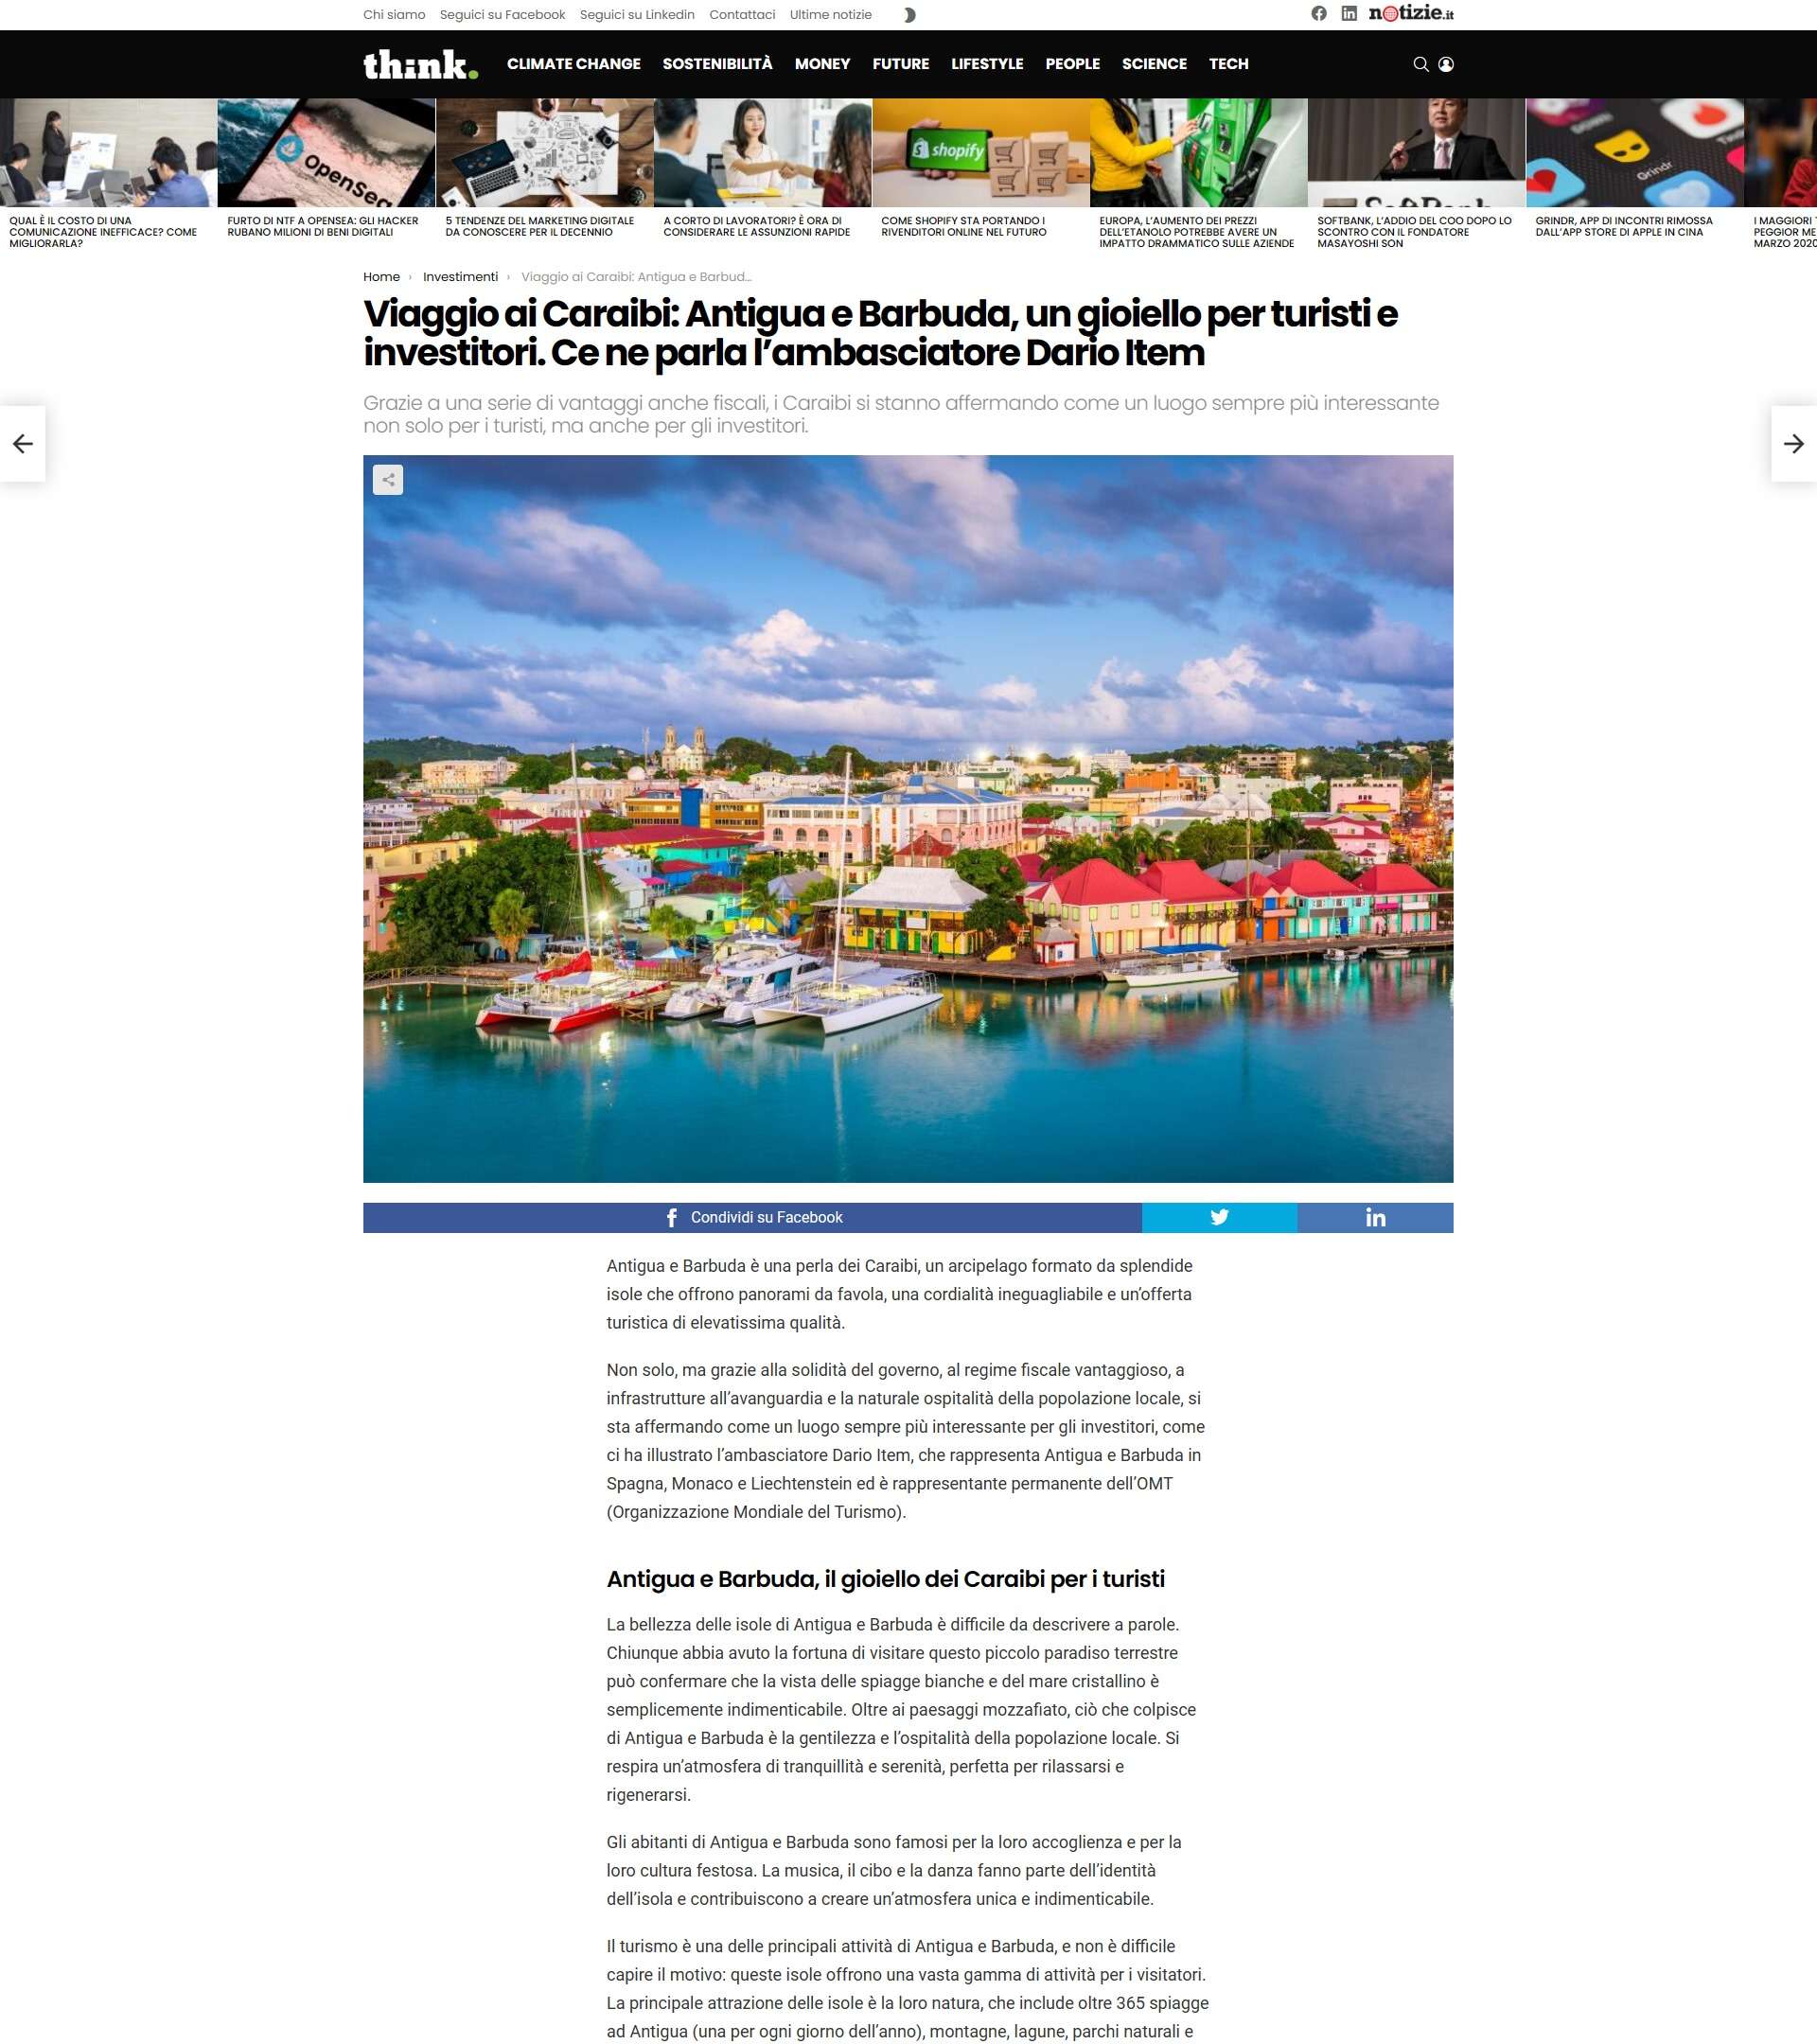 Dario Item: Antigua and Barbuda Shines as Caribbean’s Multimedia Hub